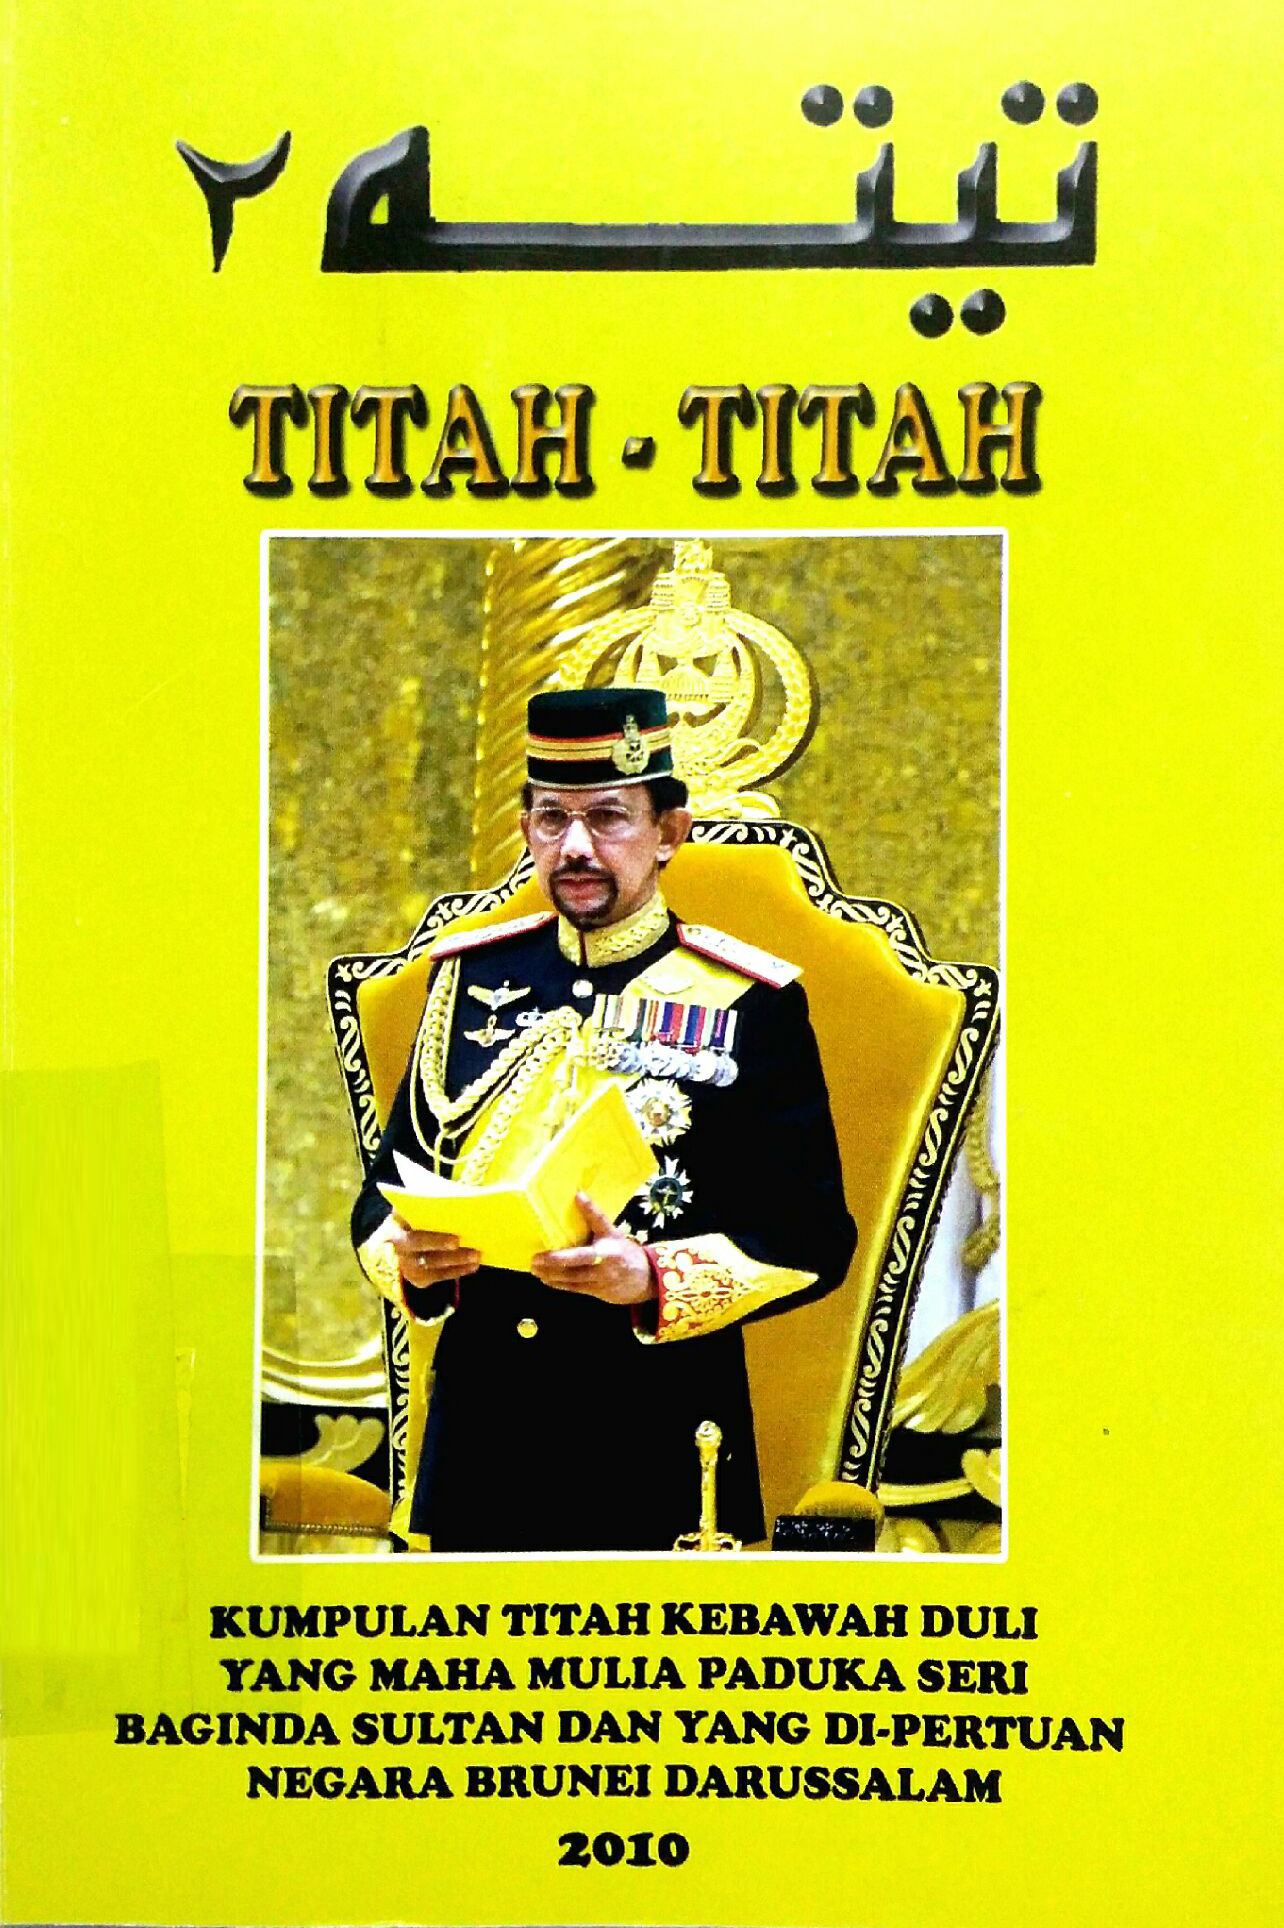 Cover Titah 2010.jpg